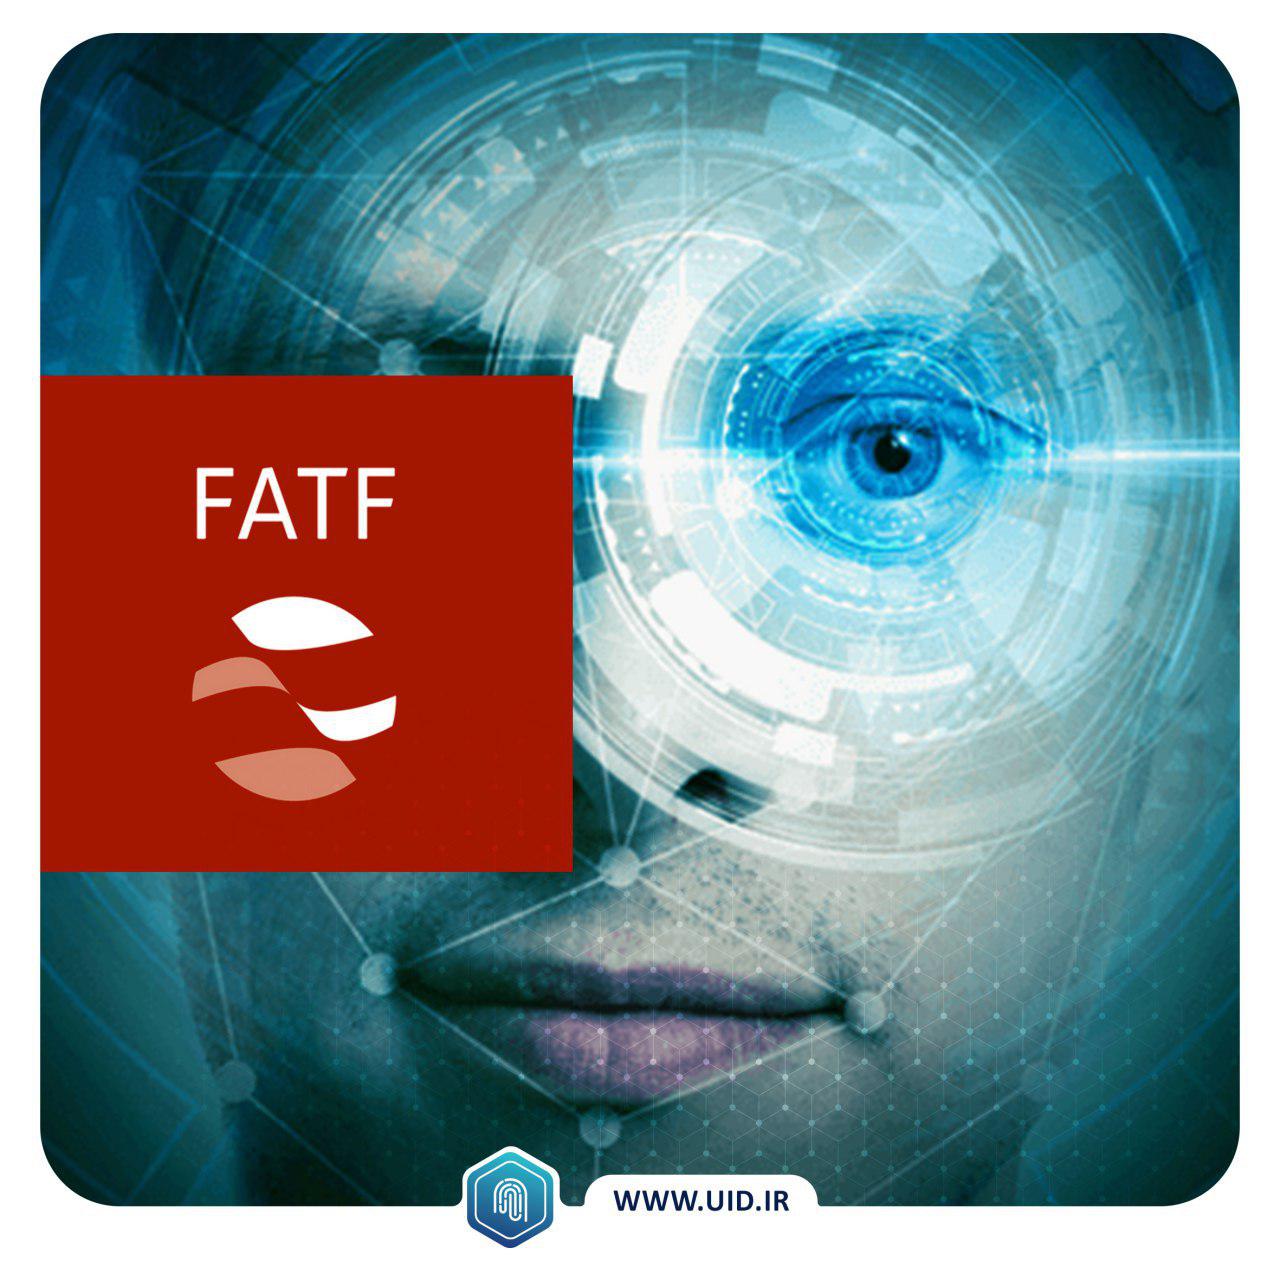 دستورالعمل FATF و اهمیت احراز هویت دیجیتال مبتنی بر ویژگی های بایومتریک